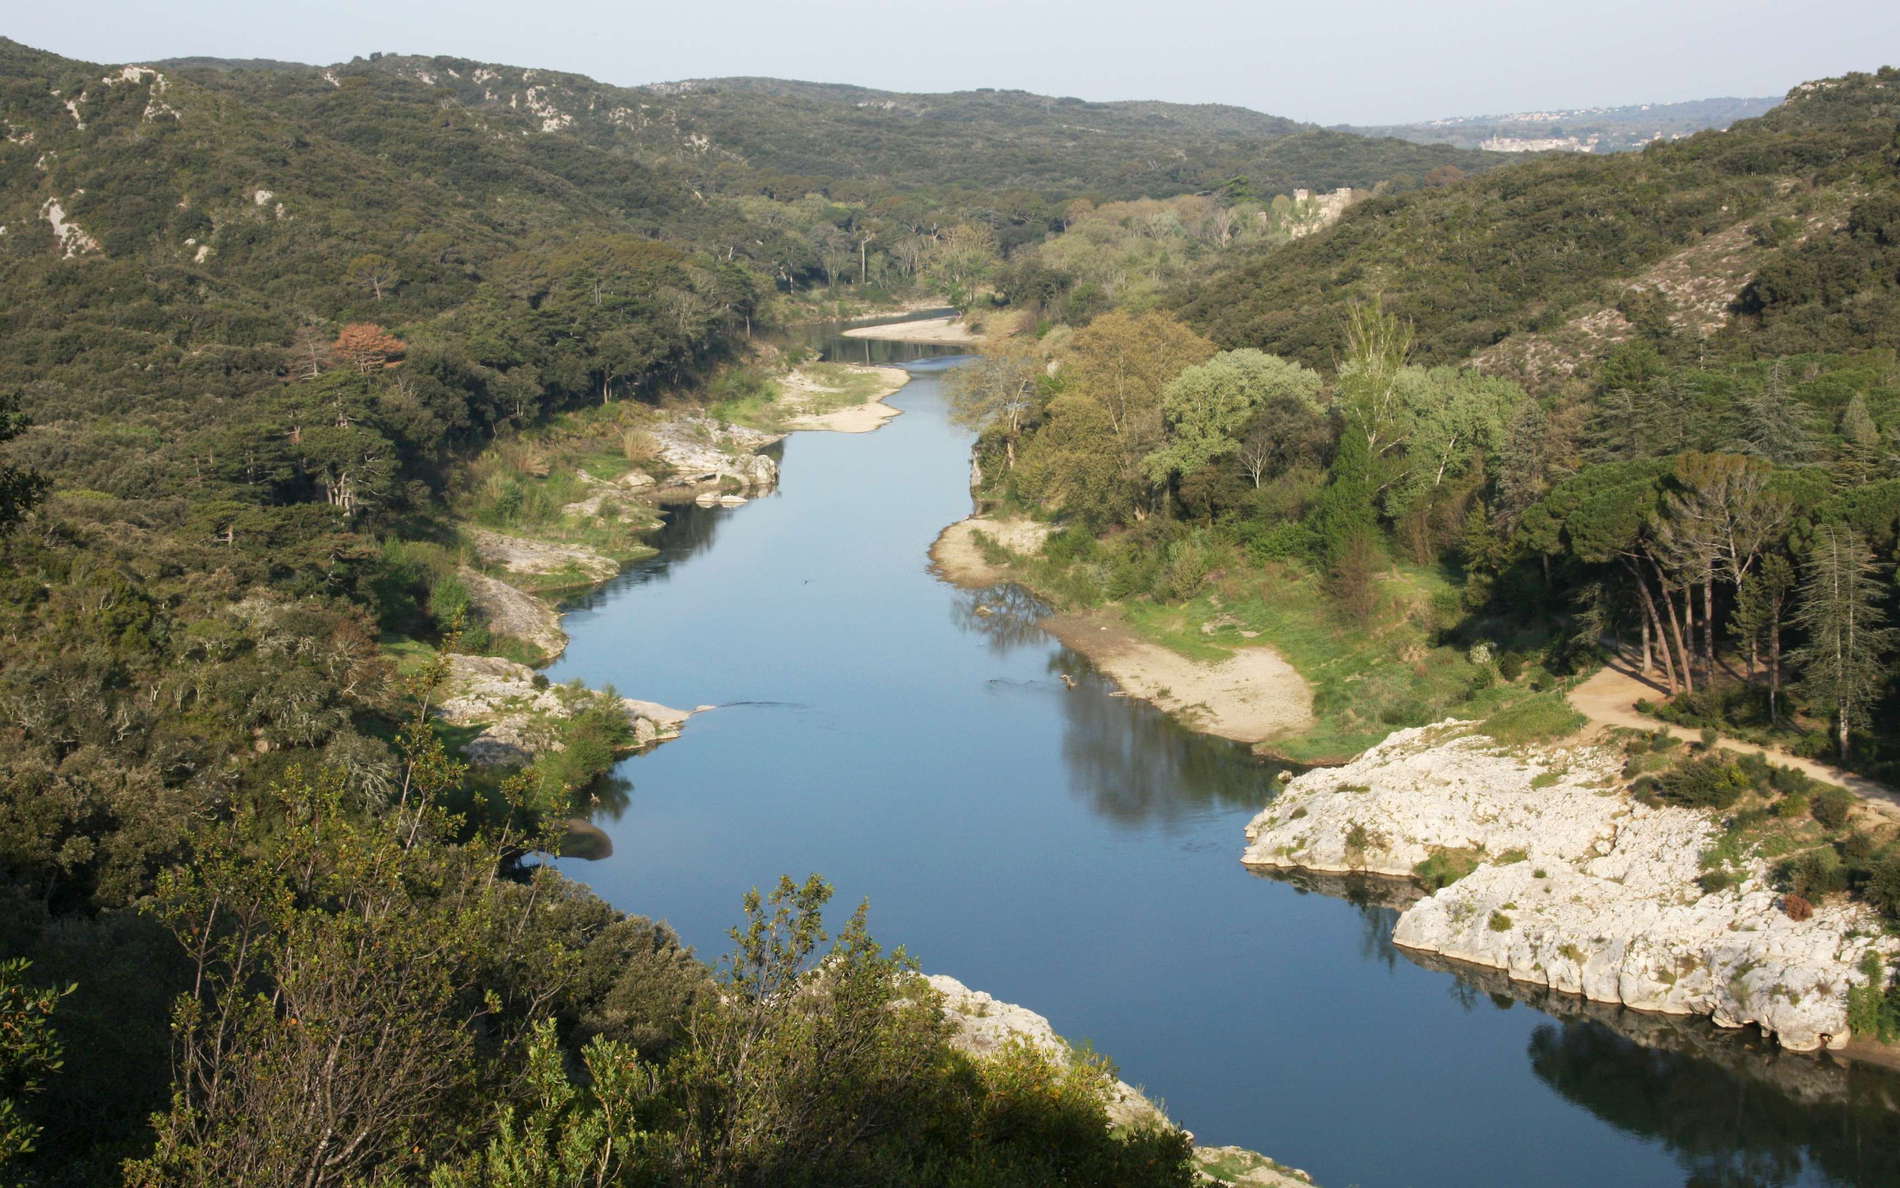 Gardon River